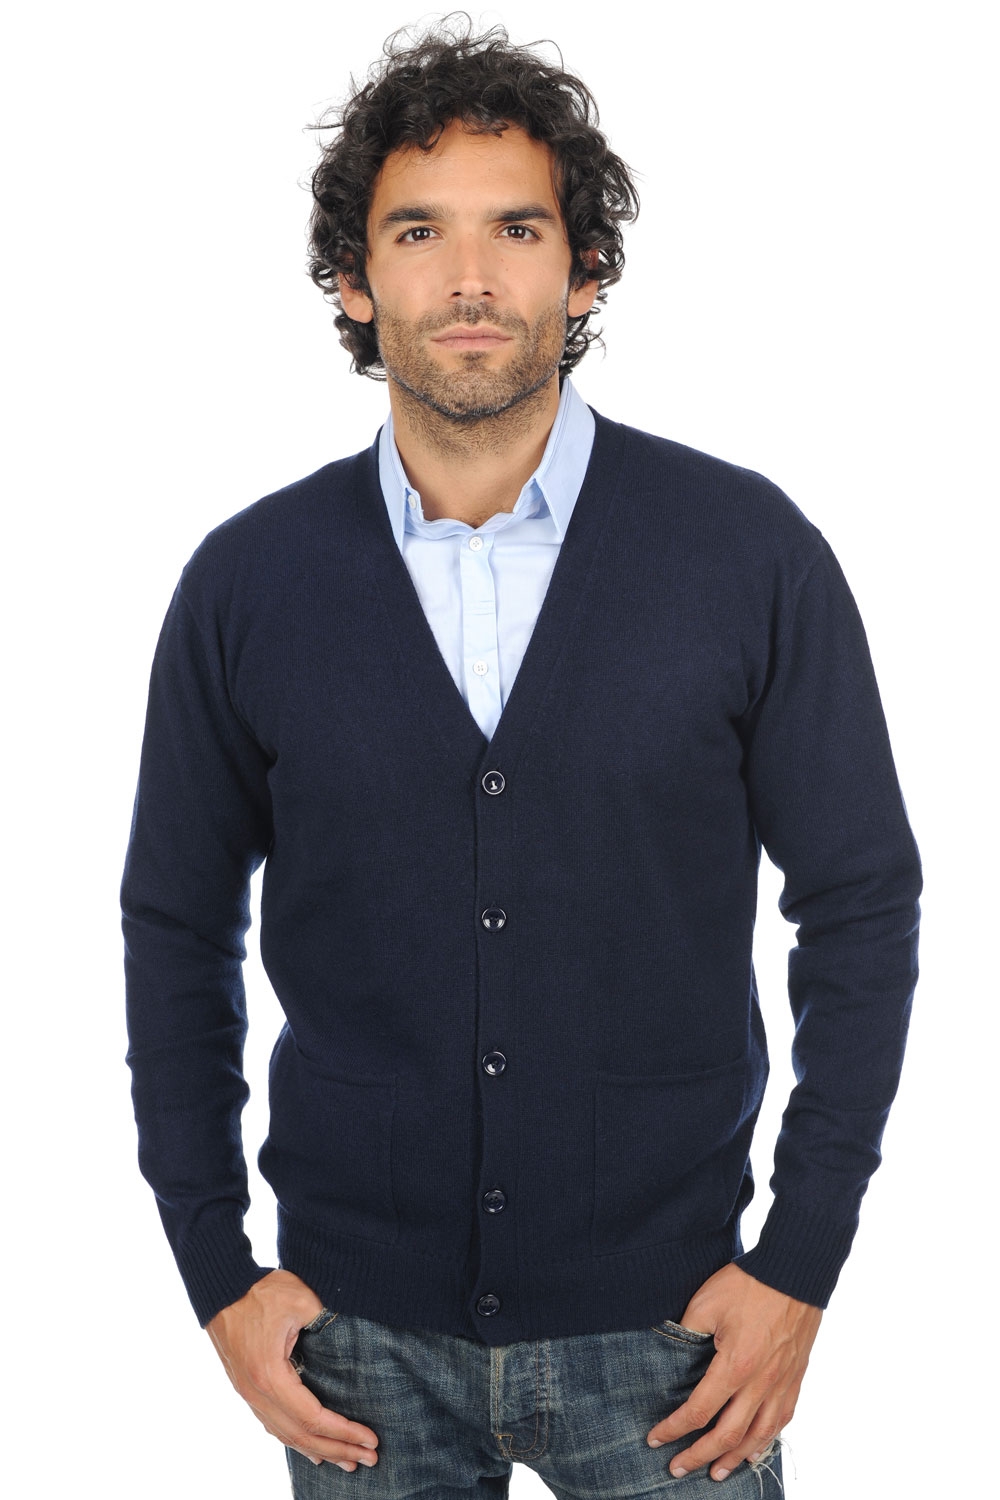 Cashmere men waistcoat sleeveless sweaters yoni dress blue 2xl